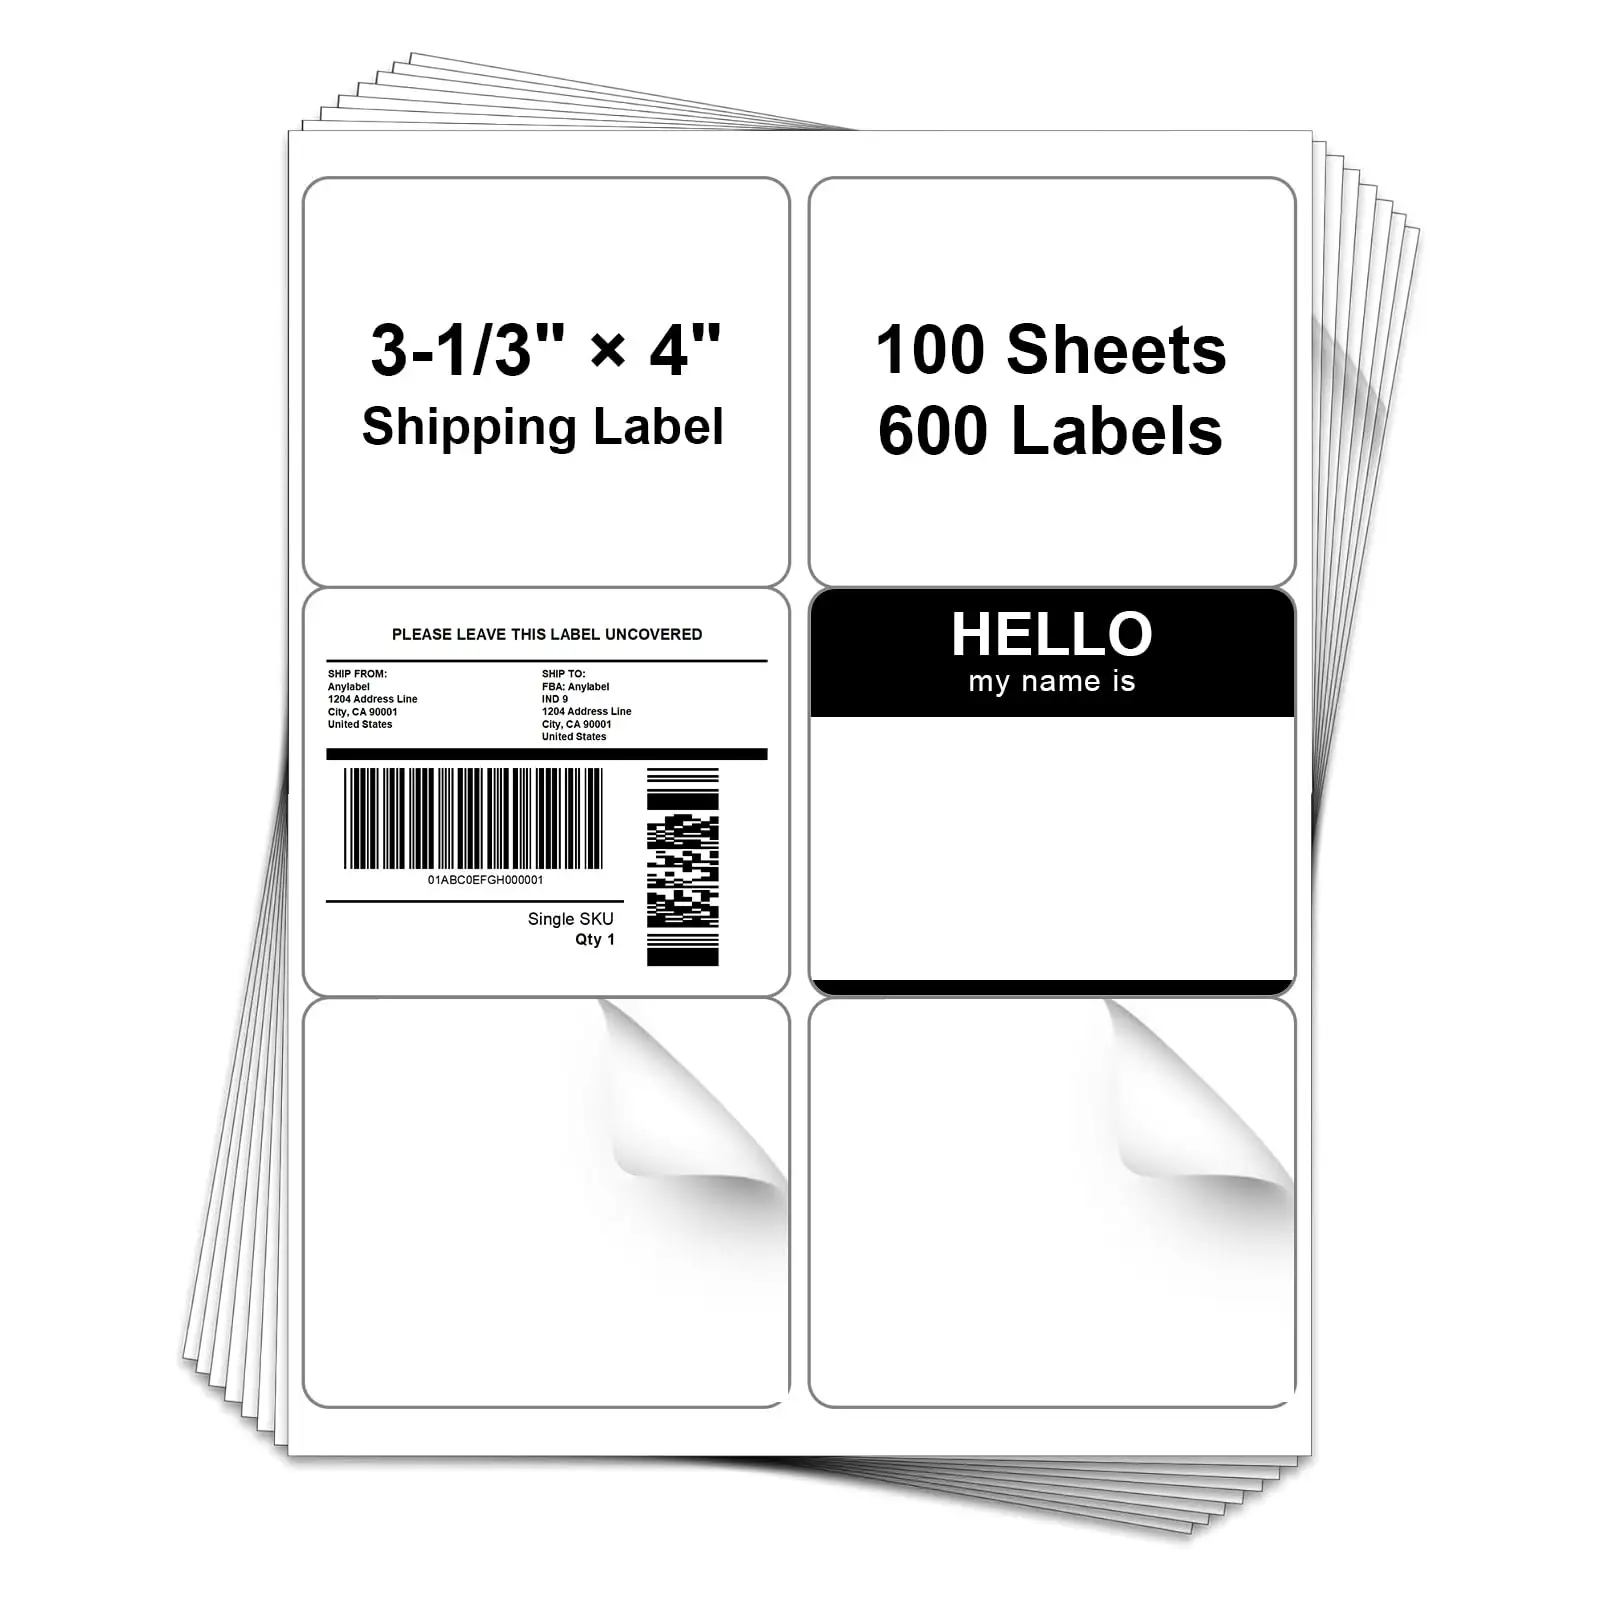 Etiquetas adesivas recicláveis A4 6-Up, adesivos de papel branco à prova d'água para impressora a laser/jato de tinta, para uso no envio